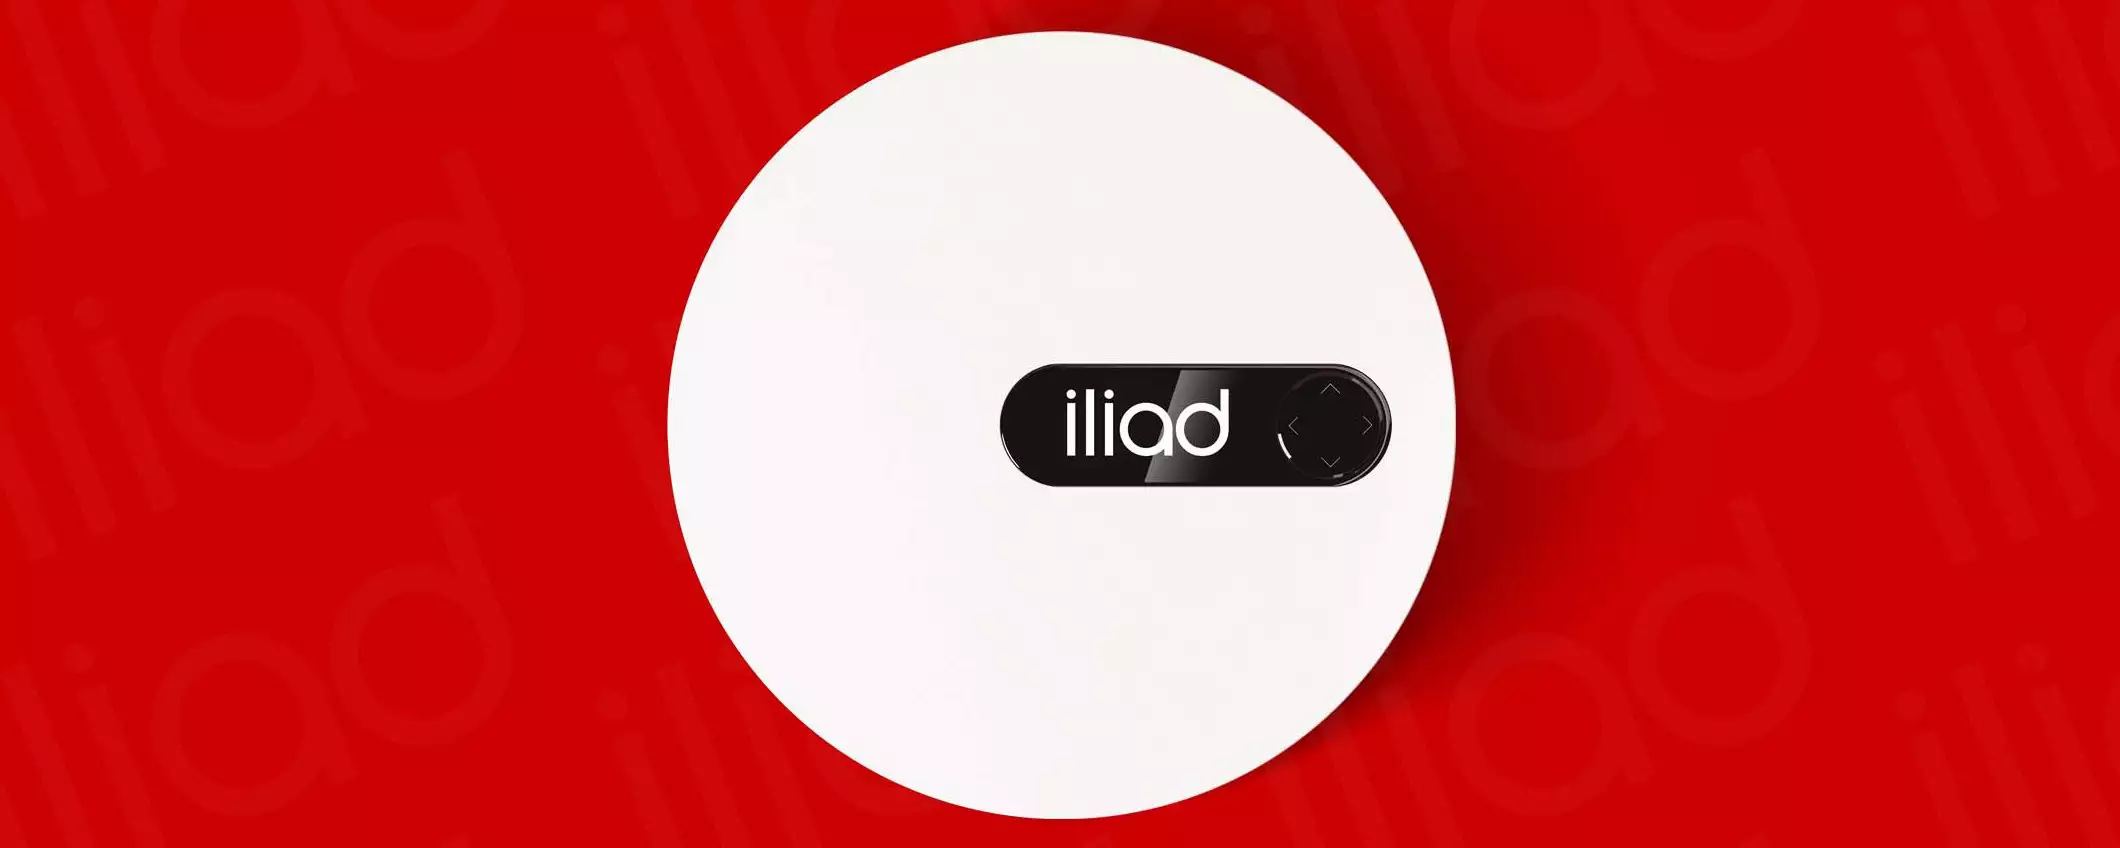 Fibra Iliad: router iliadbox quasi obbligatorio